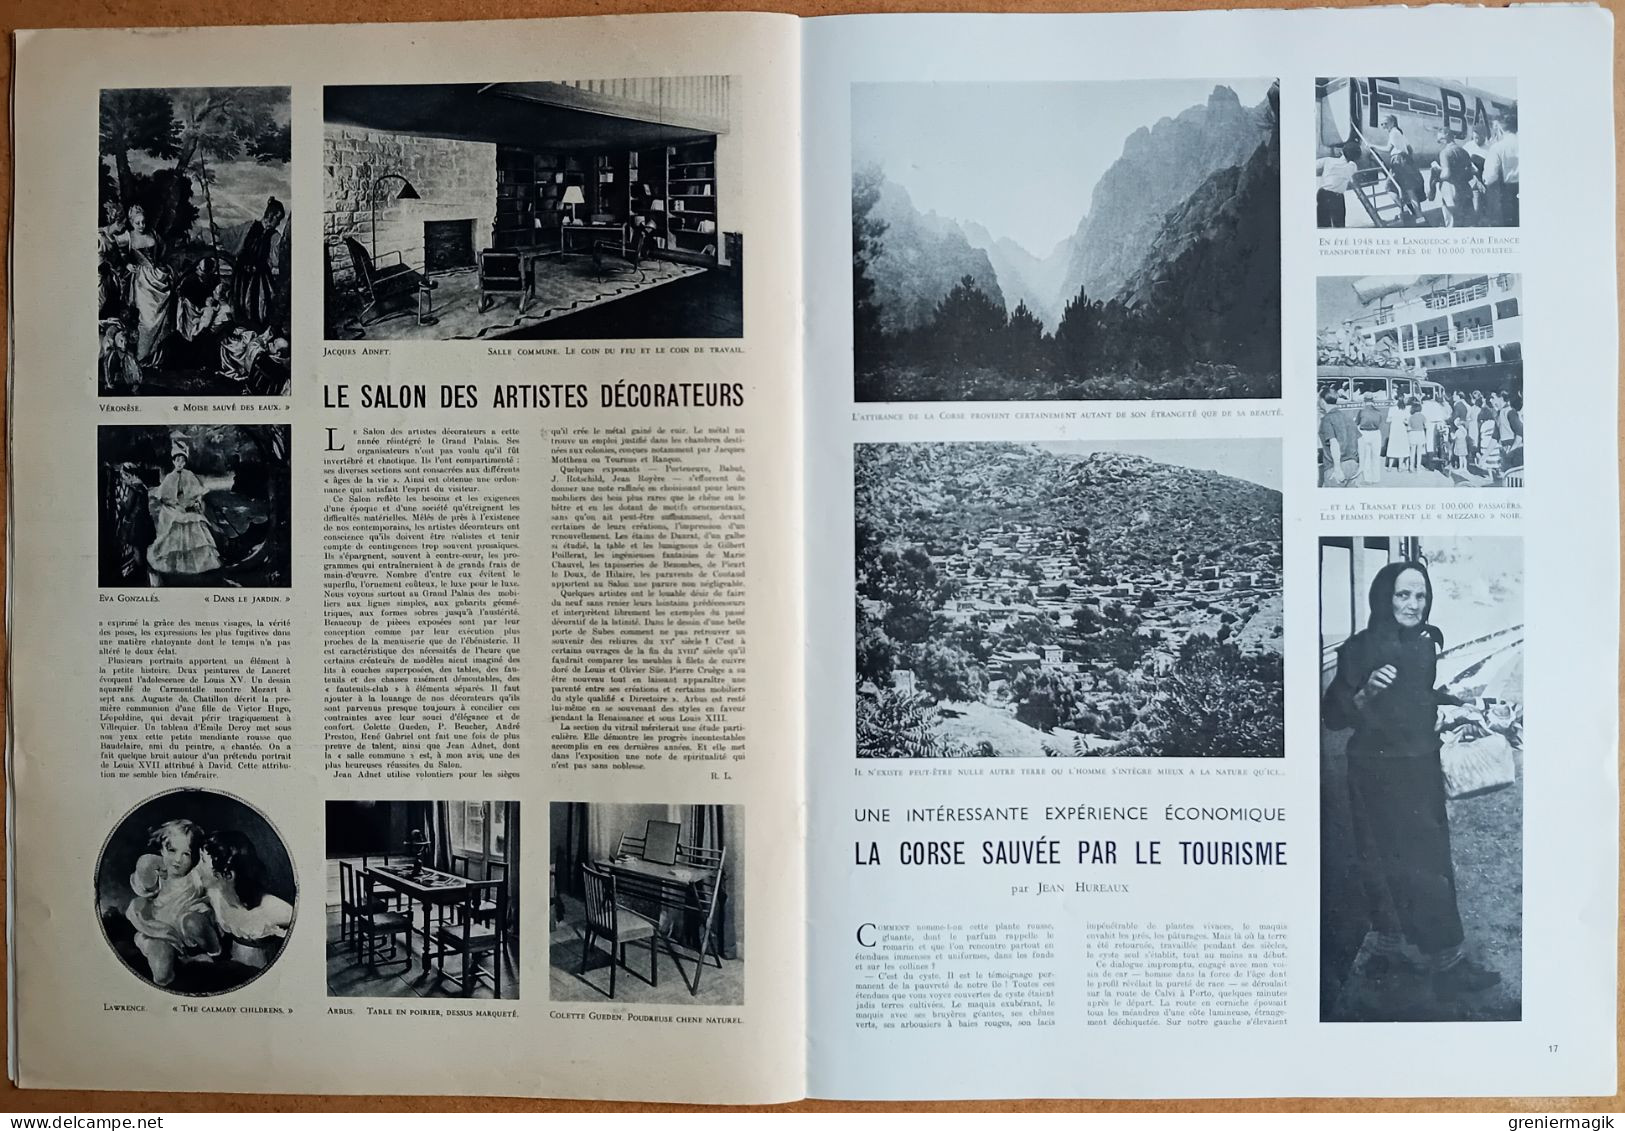 France Illustration N°194 02/07/1949 24h du Mans/Syrie/Météorologie/Lutherie/La musique à Bali/Corse/Rallye aérien Anjou